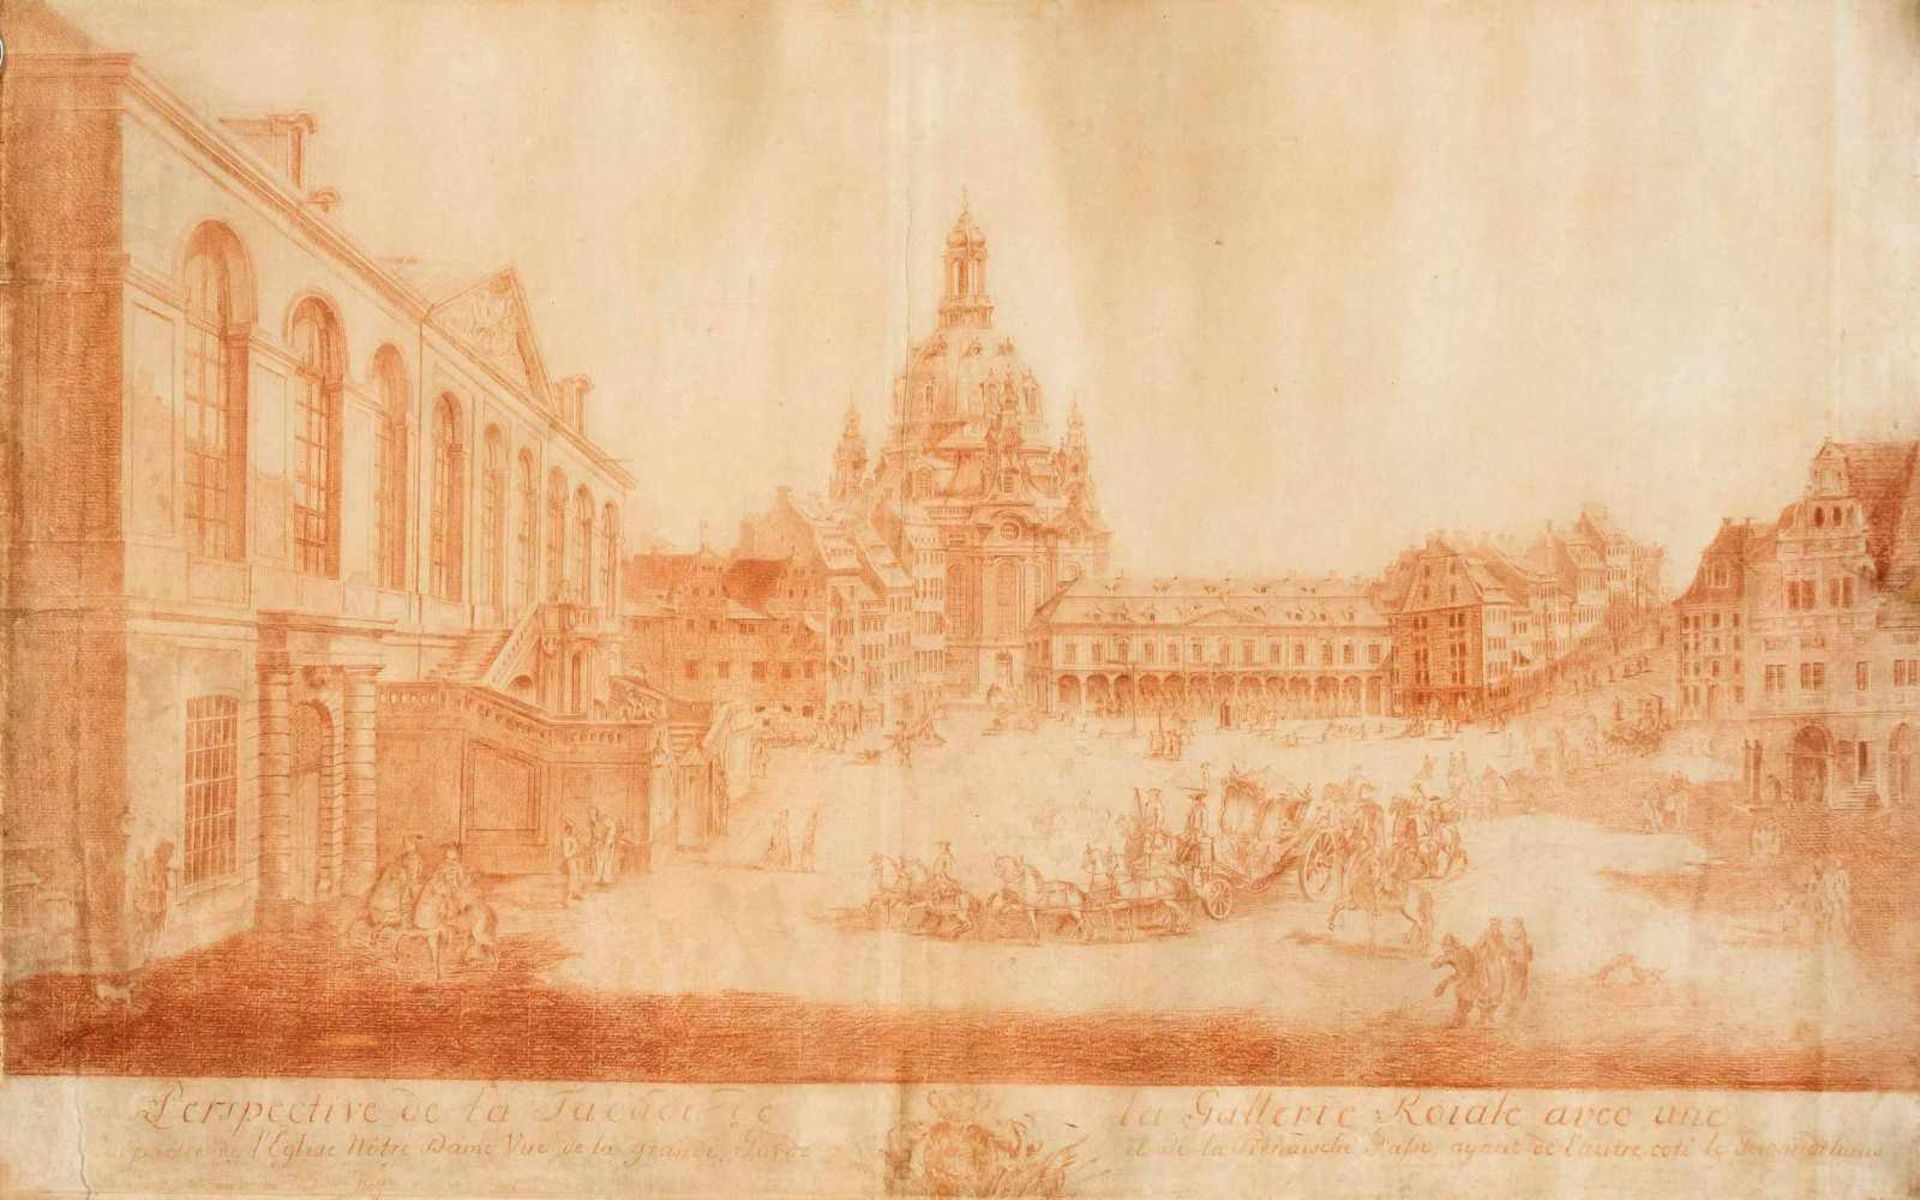 Canaletto, d.i. Bernardo Bellotto (1721-1780), after, ''Perspective de la Facade de la